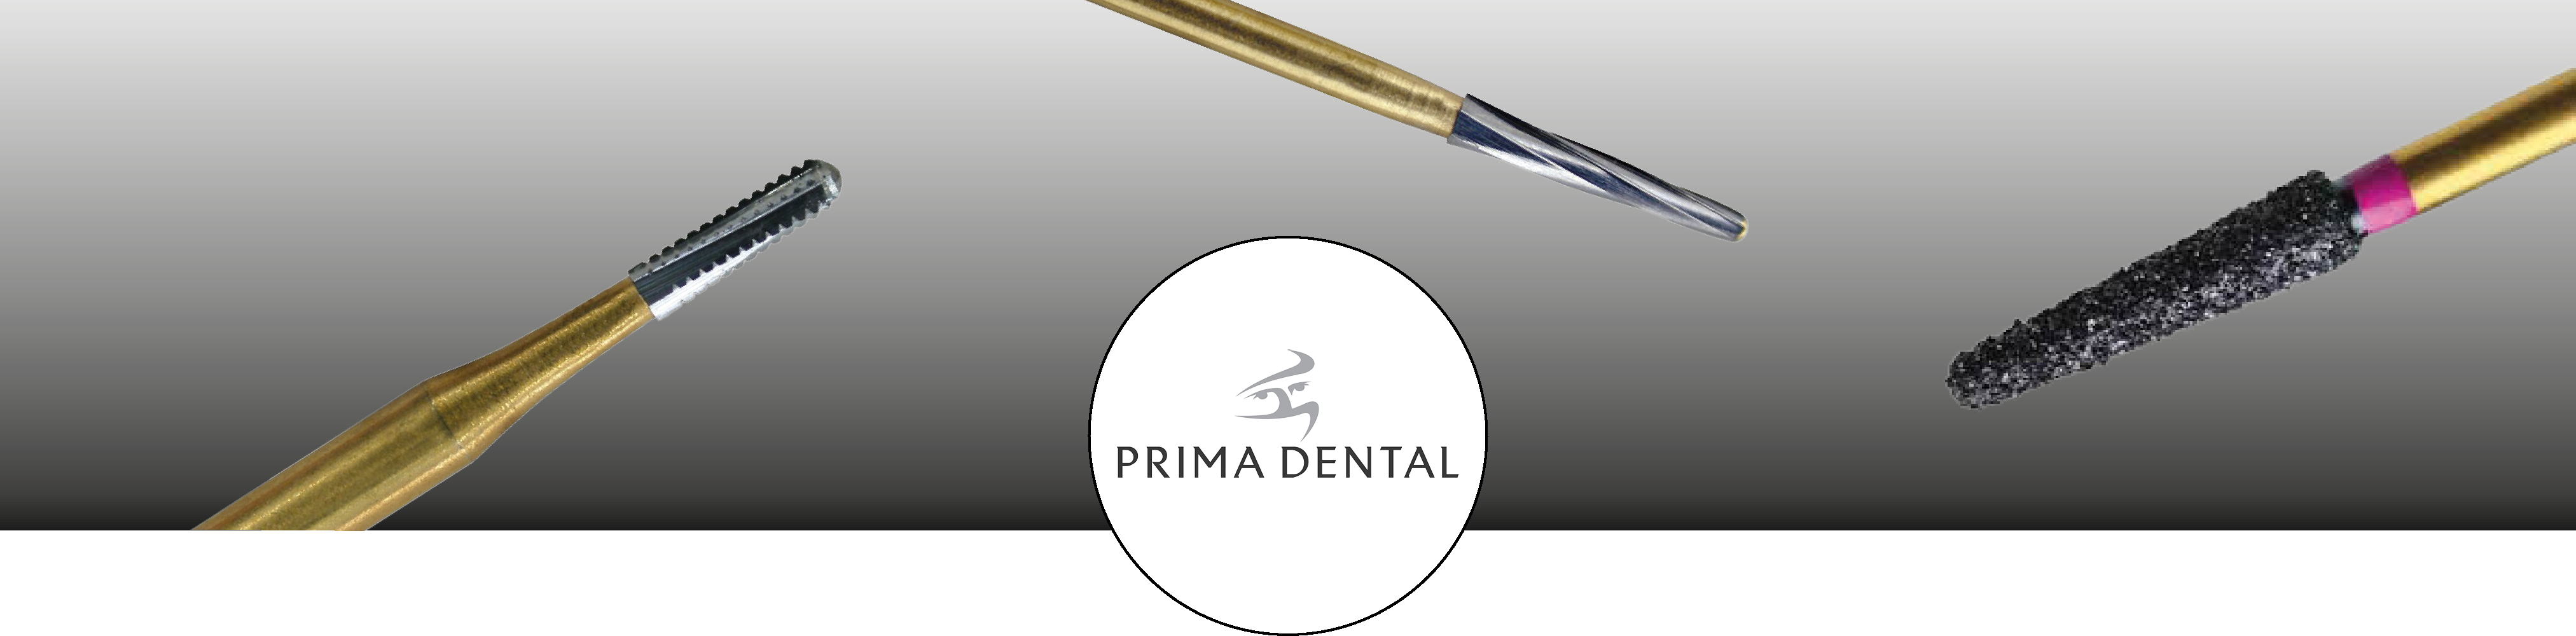 banner_prima-dental